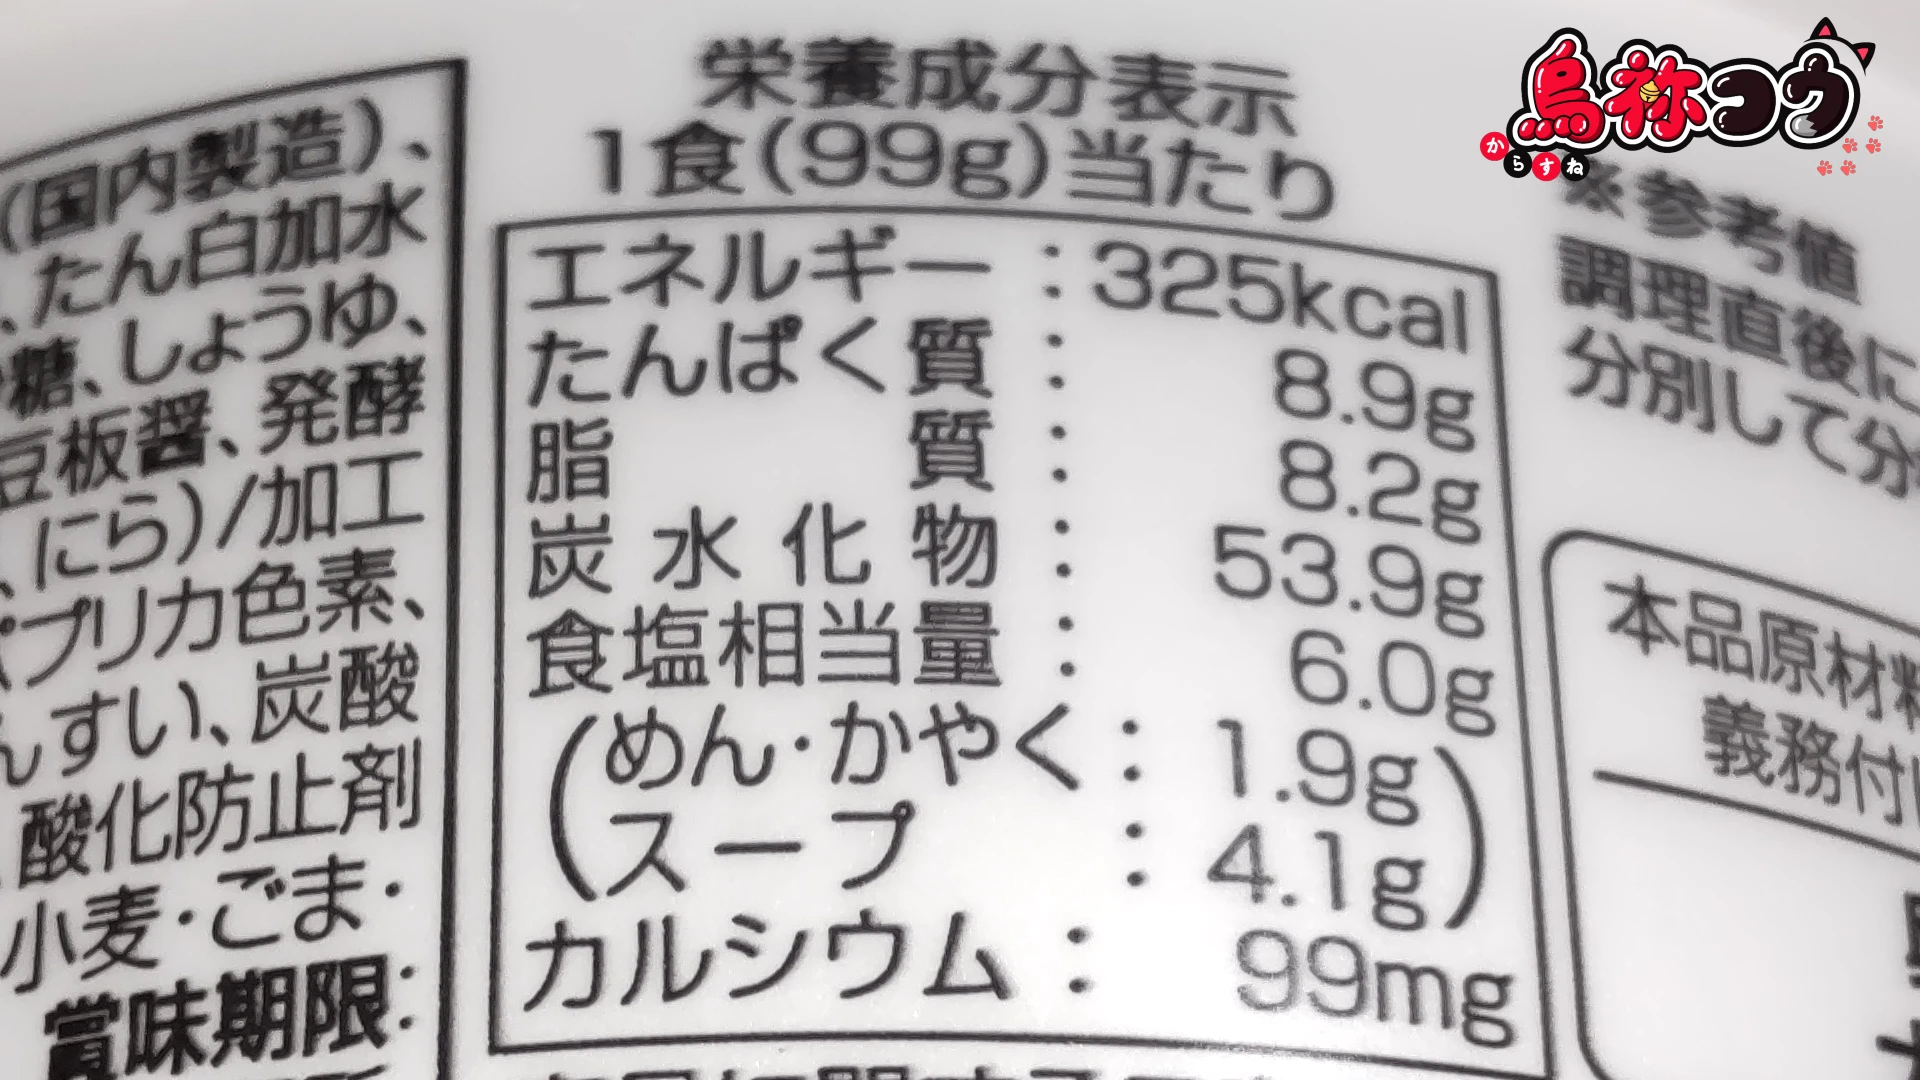 寿がきやのカップ台湾ラーメンの栄養成分表示です